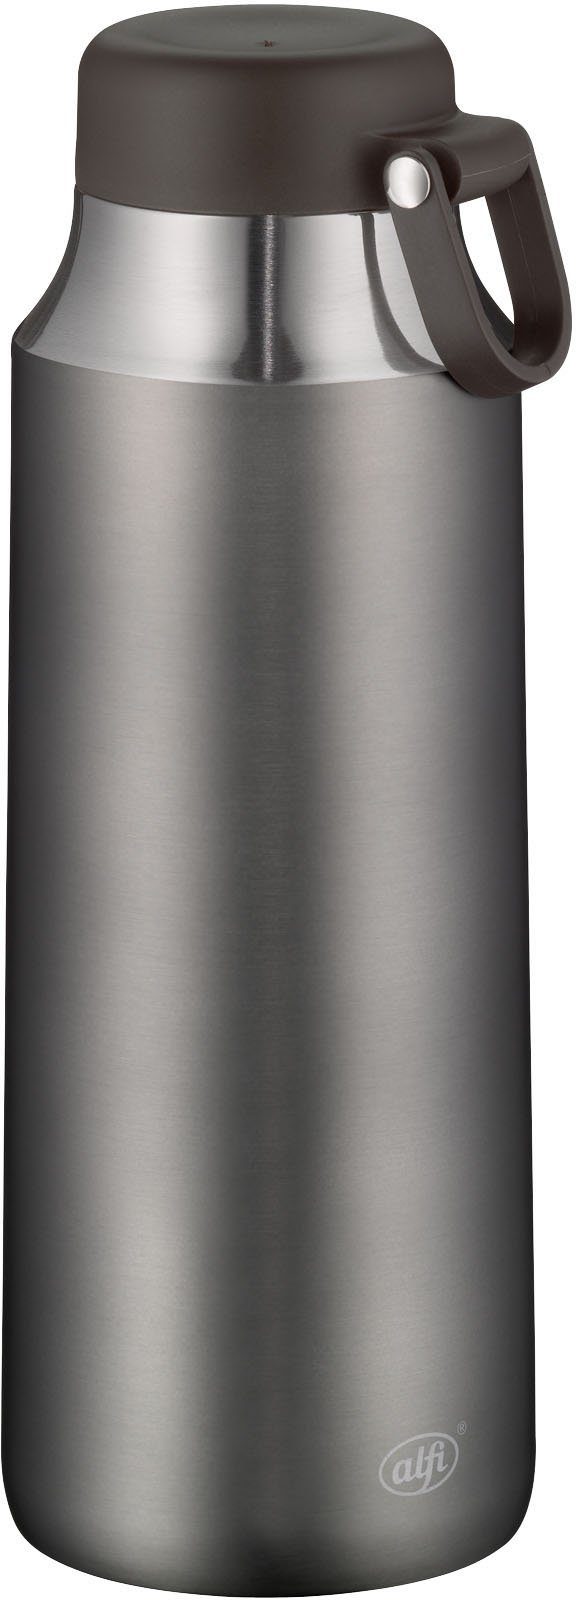 Alfi Thermoflasche Tea Bottle Cityline, Edelstahl, 0,9 Liter, ideal für Tee grau